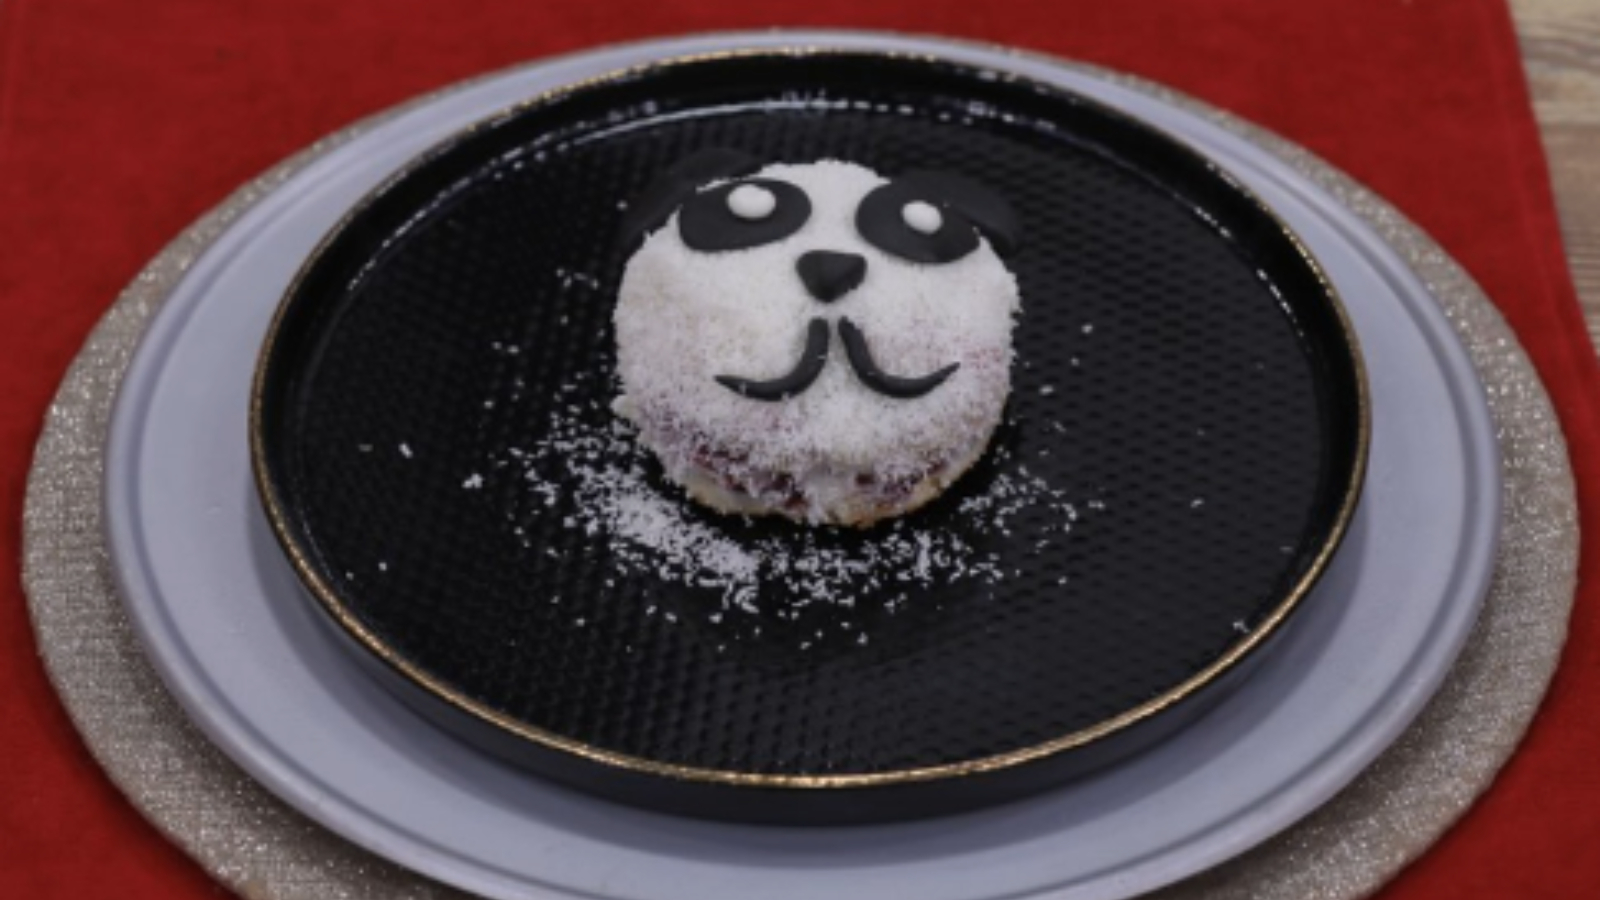 Gelinim Mutfak'ta Panda pasta tarifi nasıl yapılır? Gelinim Mutfak'ta Panda pasta tarifi